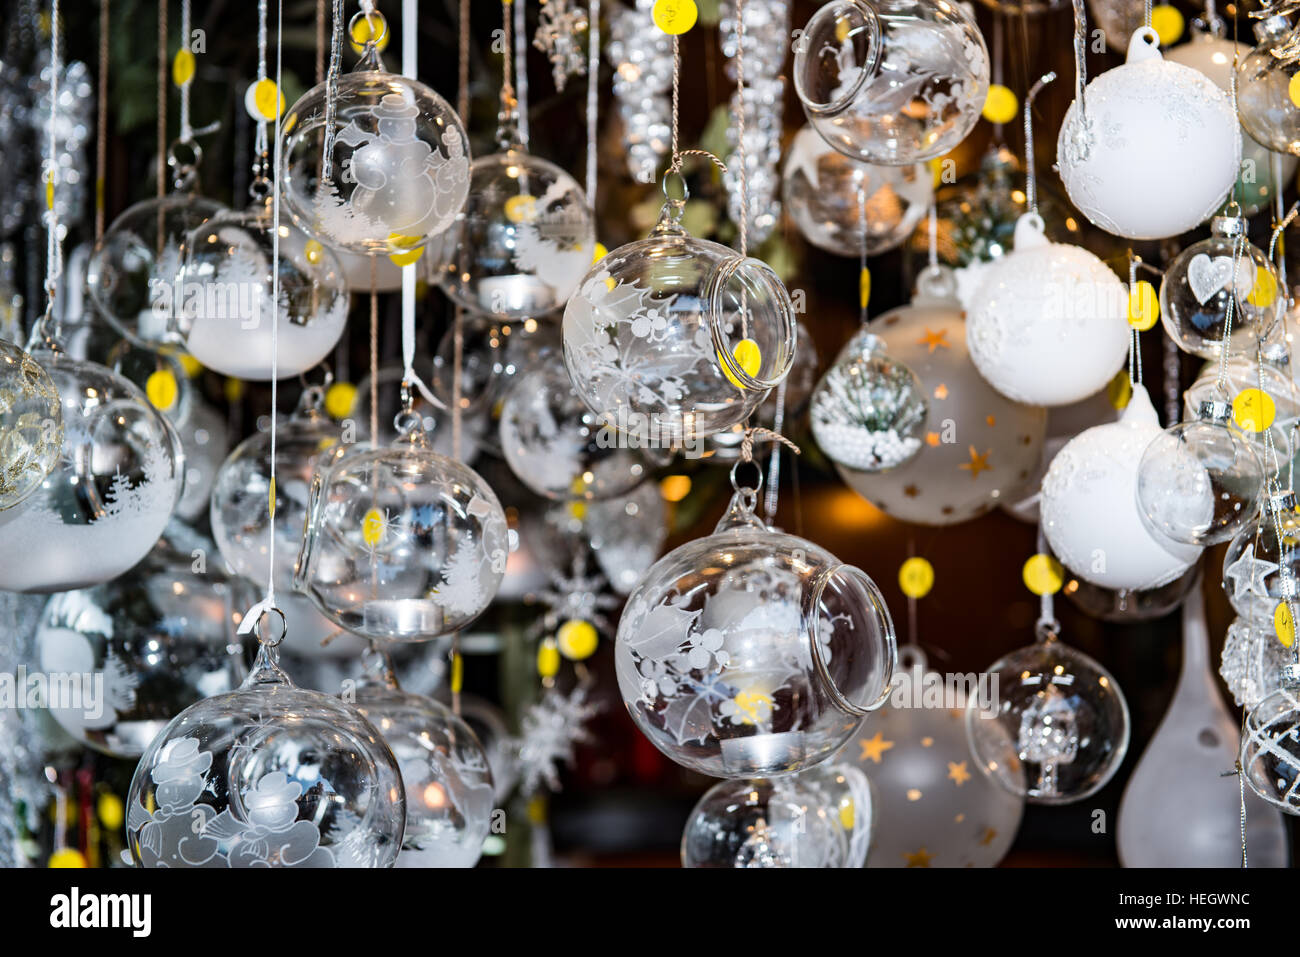 Glas Weihnachtsschmuck Baum Stockfotografie - Alamy